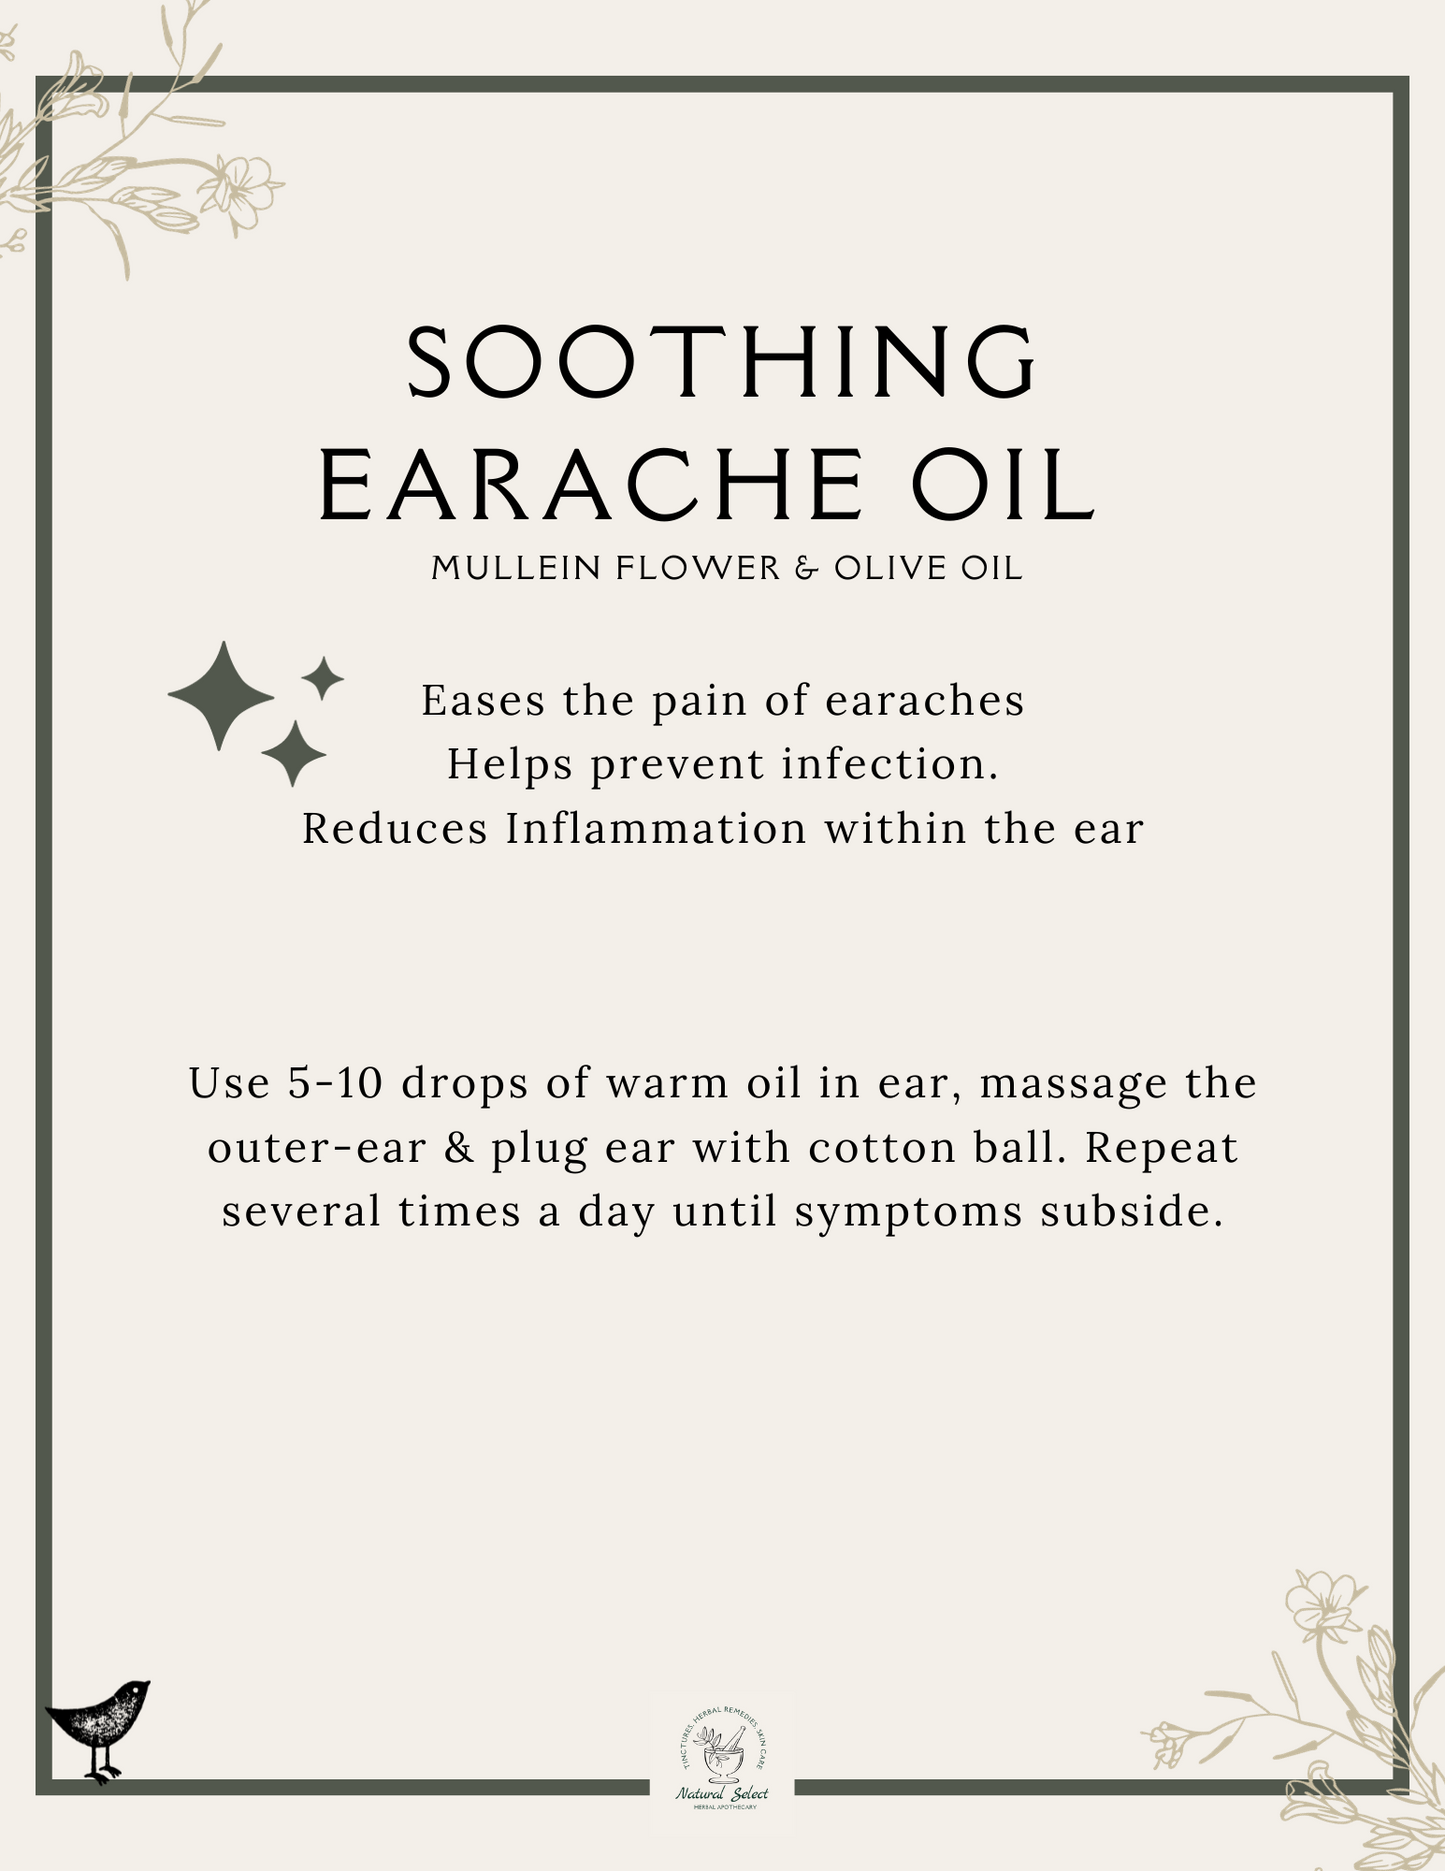 Soothing Earache Oil